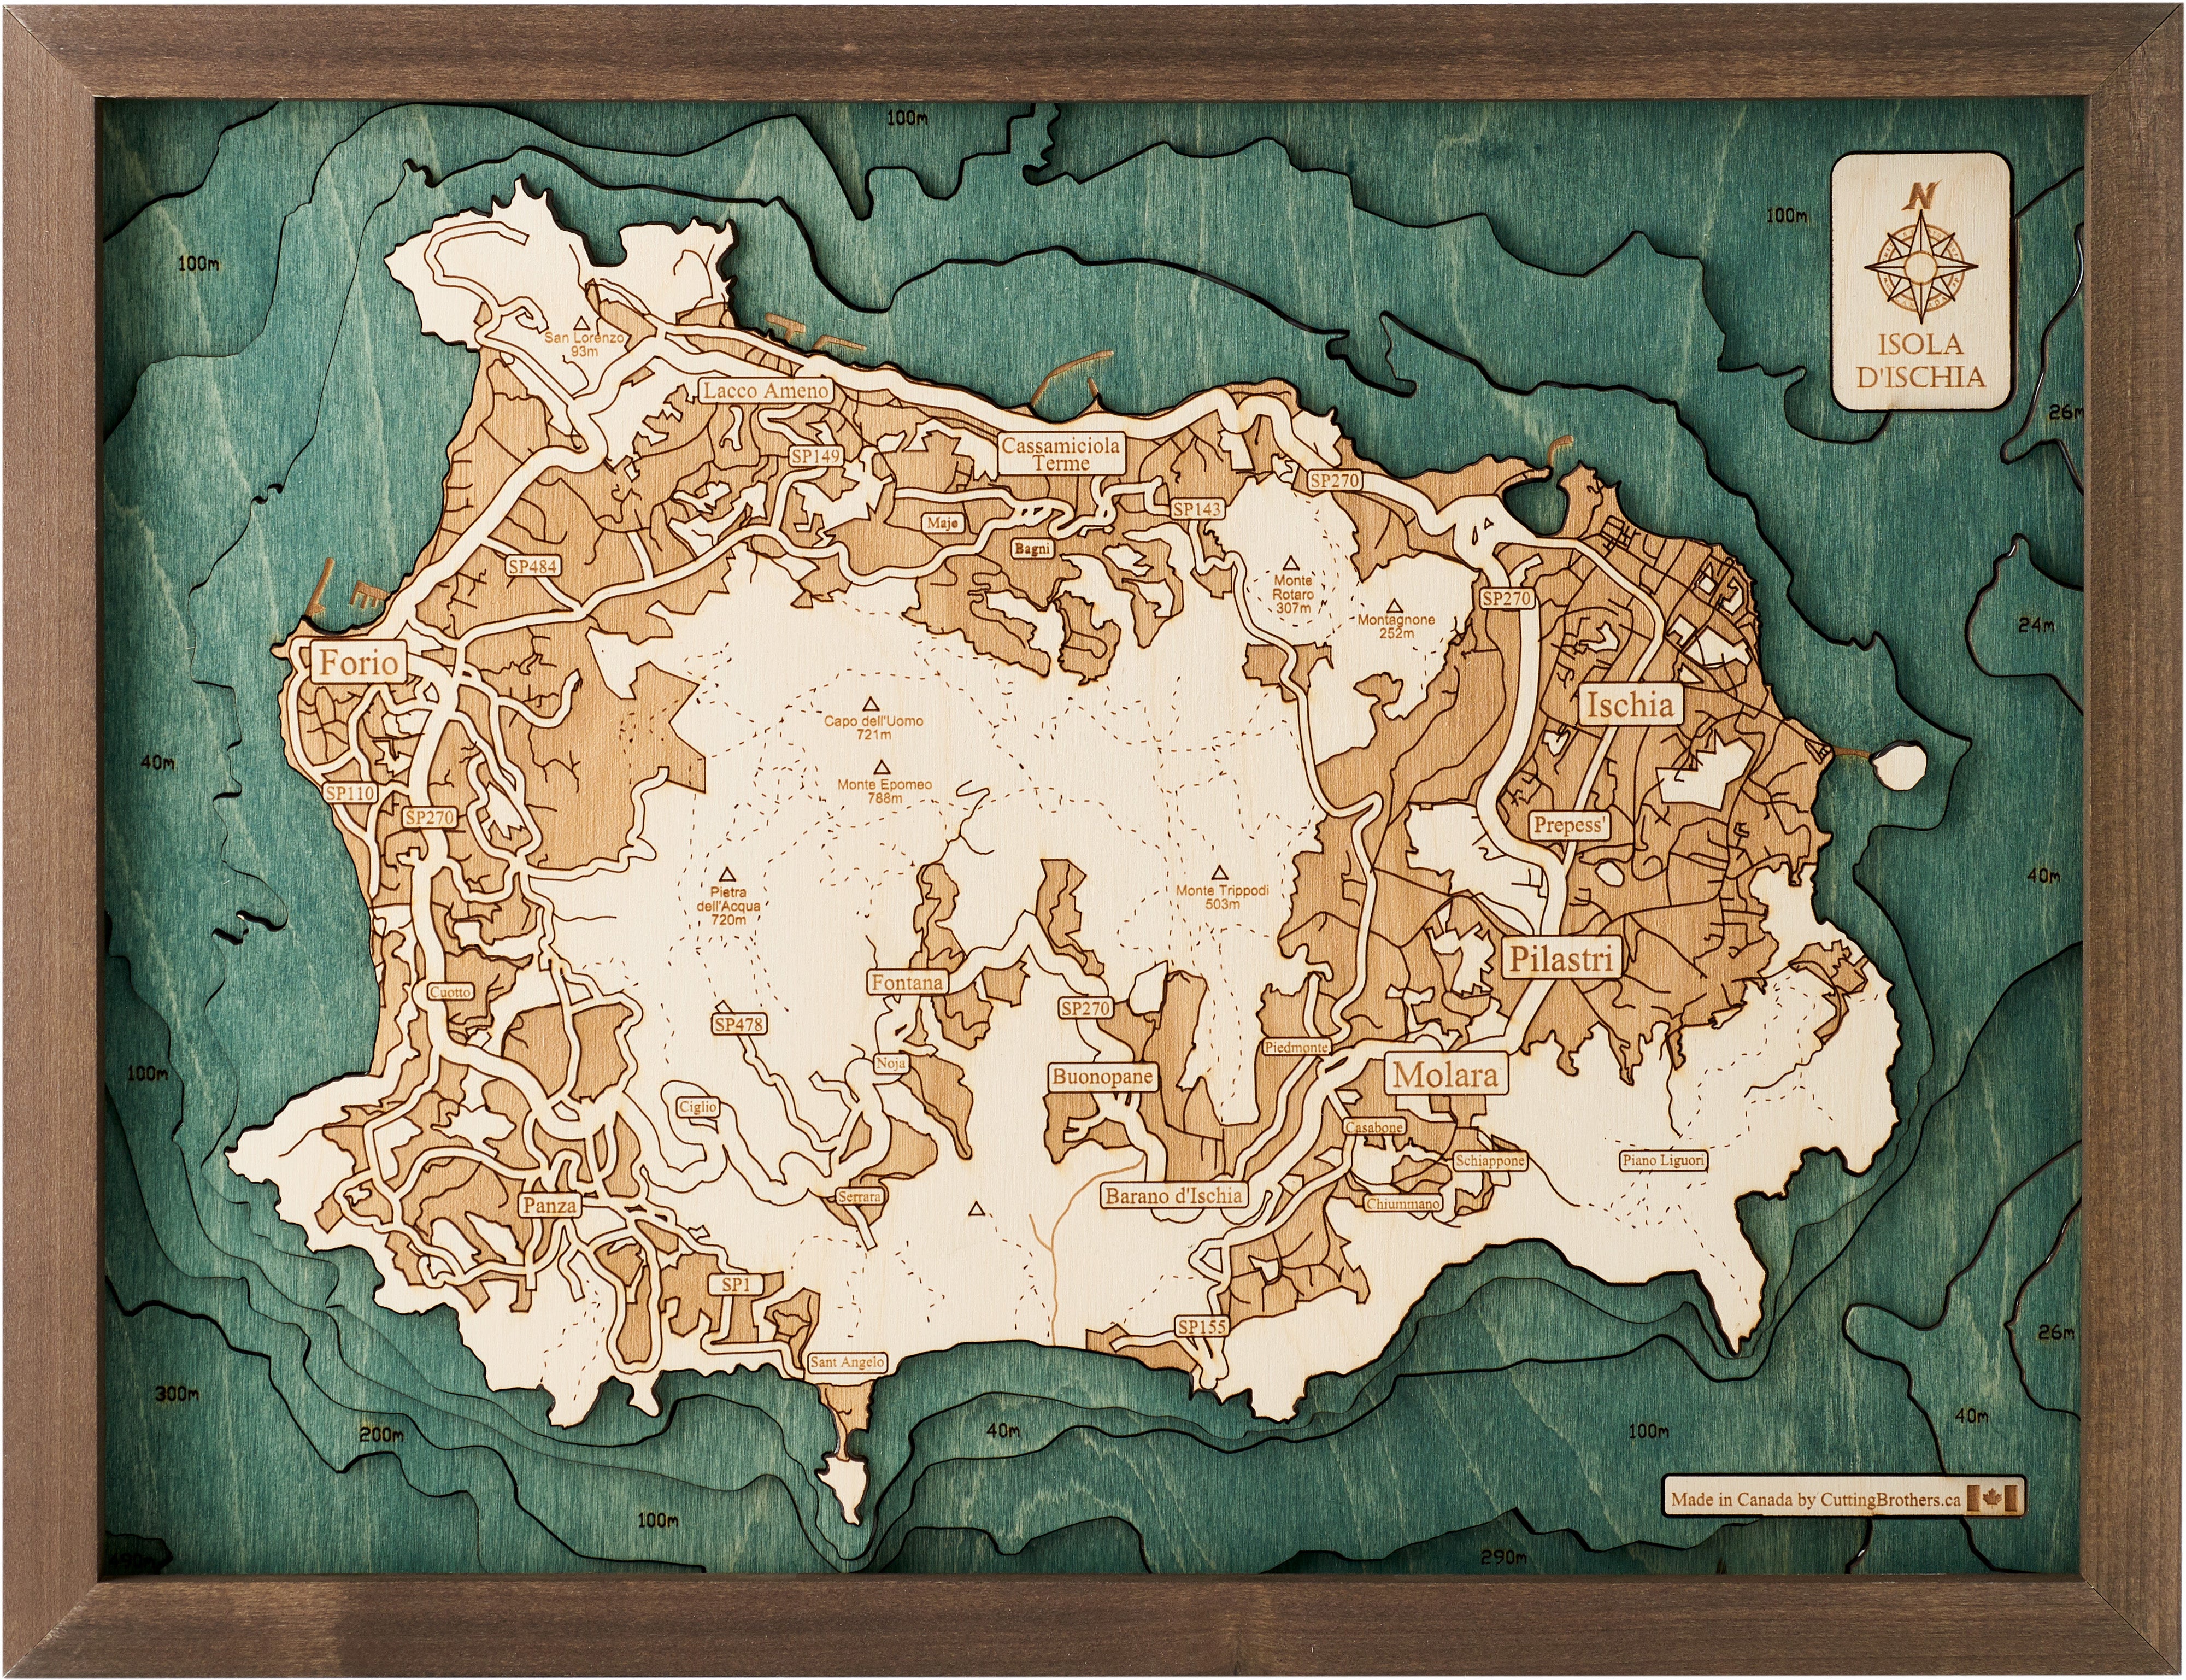 ISCHIA 3D wooden wall map - version S 